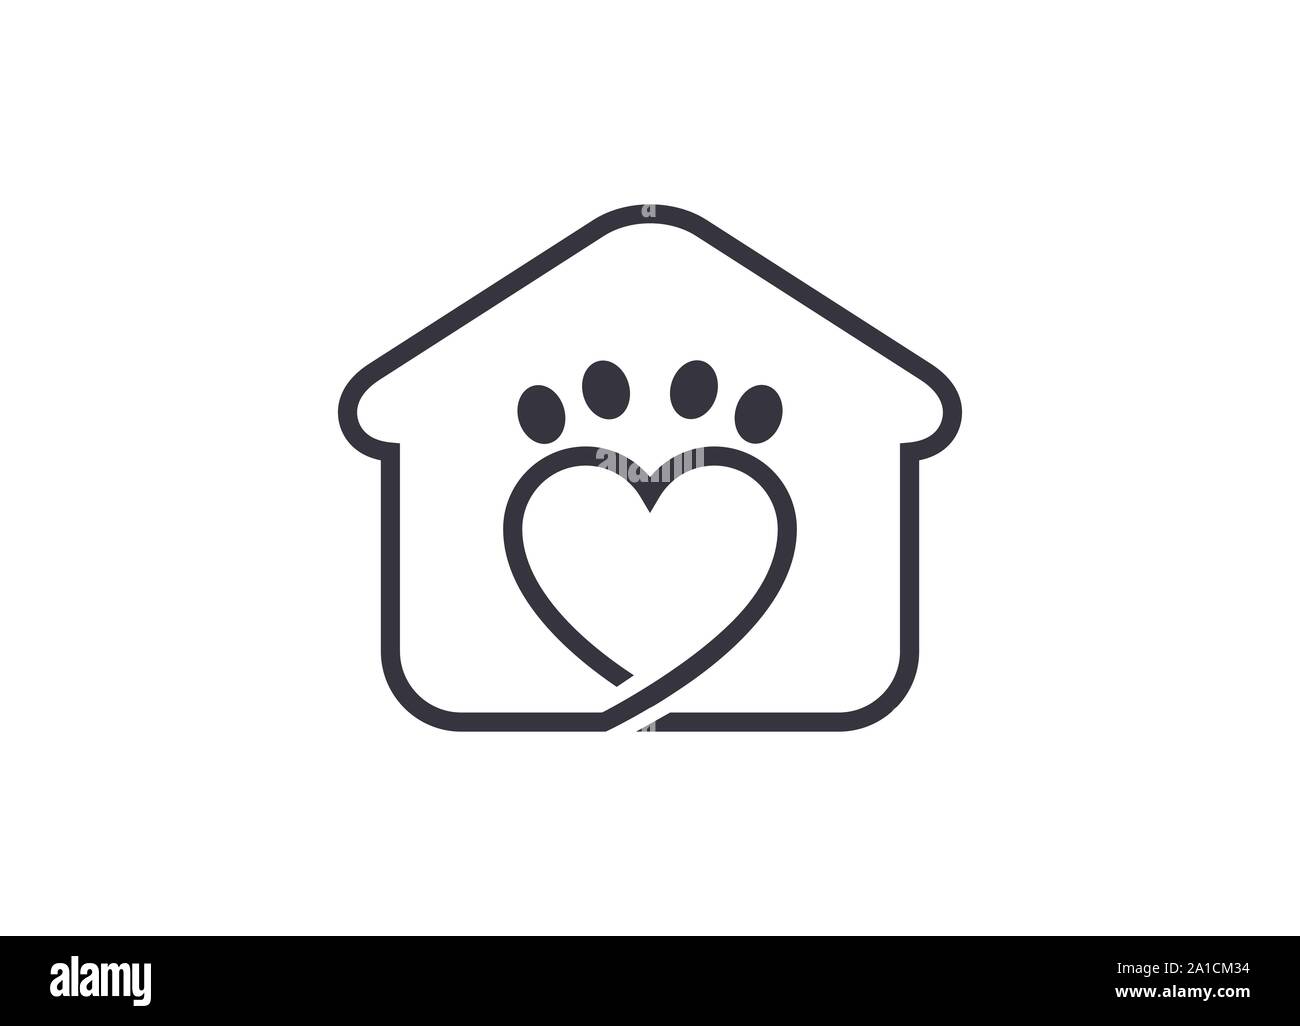 Animali domestici Home vettore modello Logo, Pet Home Logo Design Illustrazione, cane gatto pet house home love logo icona vettore Pet House Logo, pet care logo Illustrazione Vettoriale